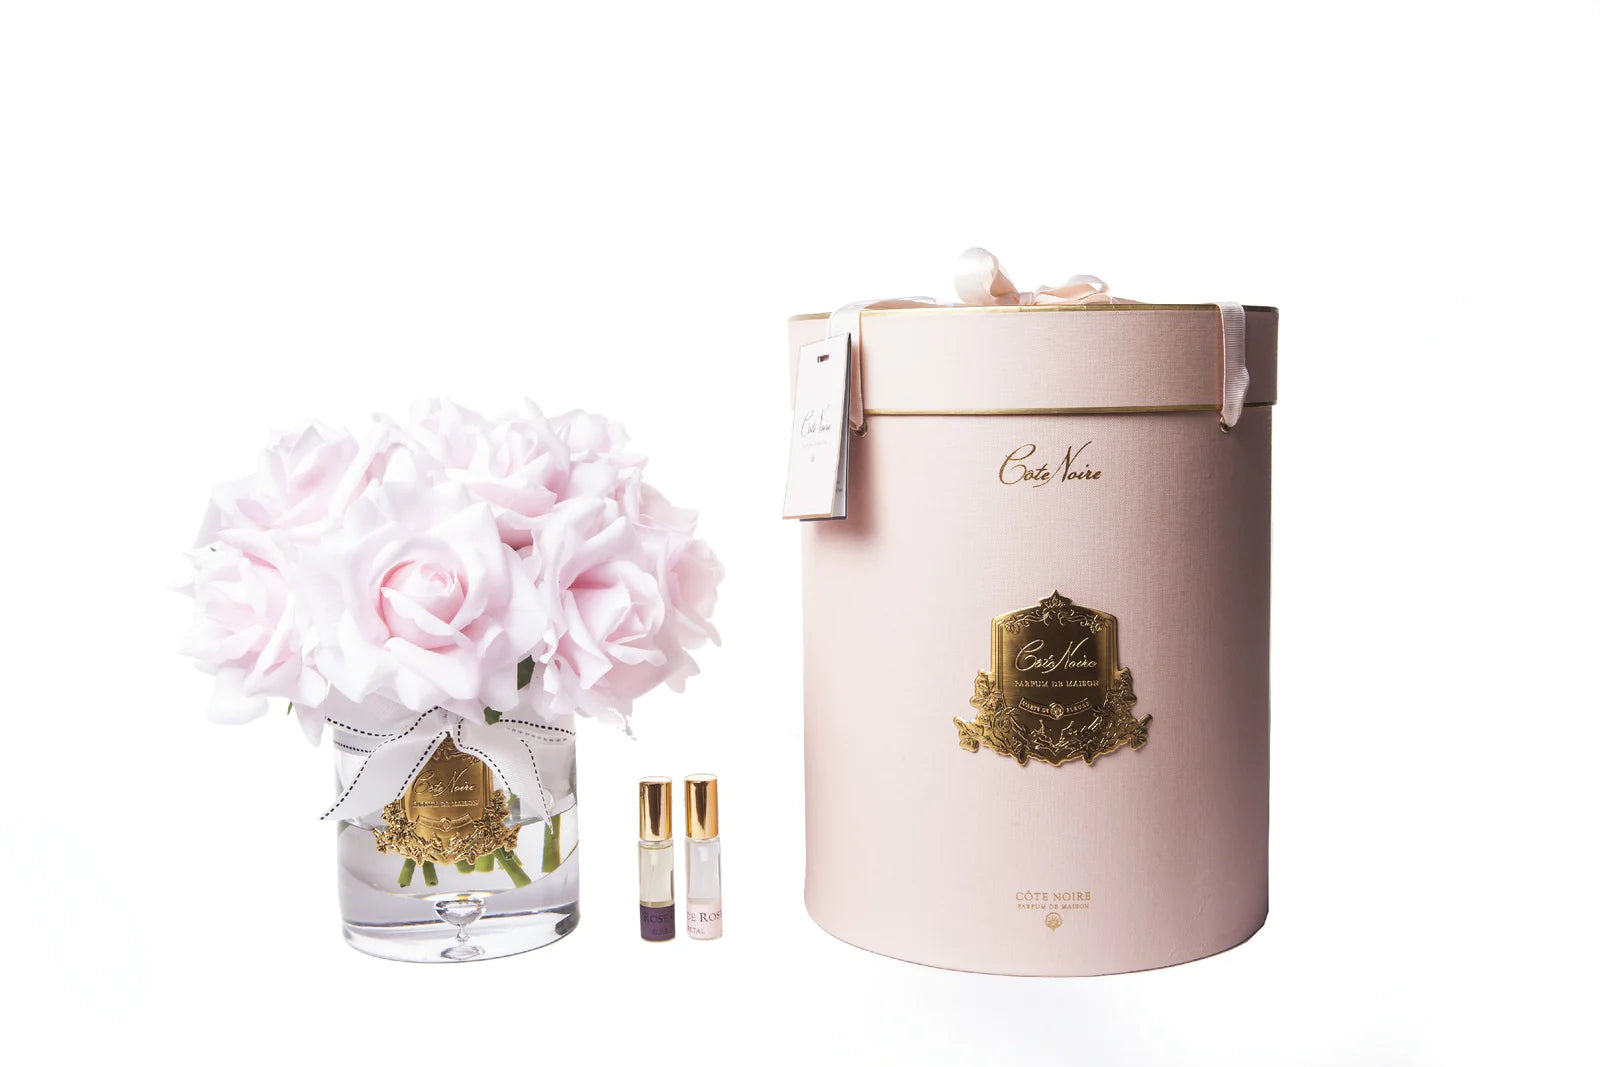 13 rosa rosen arrangiert in einer edlen glasvase, zwei parfumsprays und eine luxurioese runde geschenkbox in rosa.